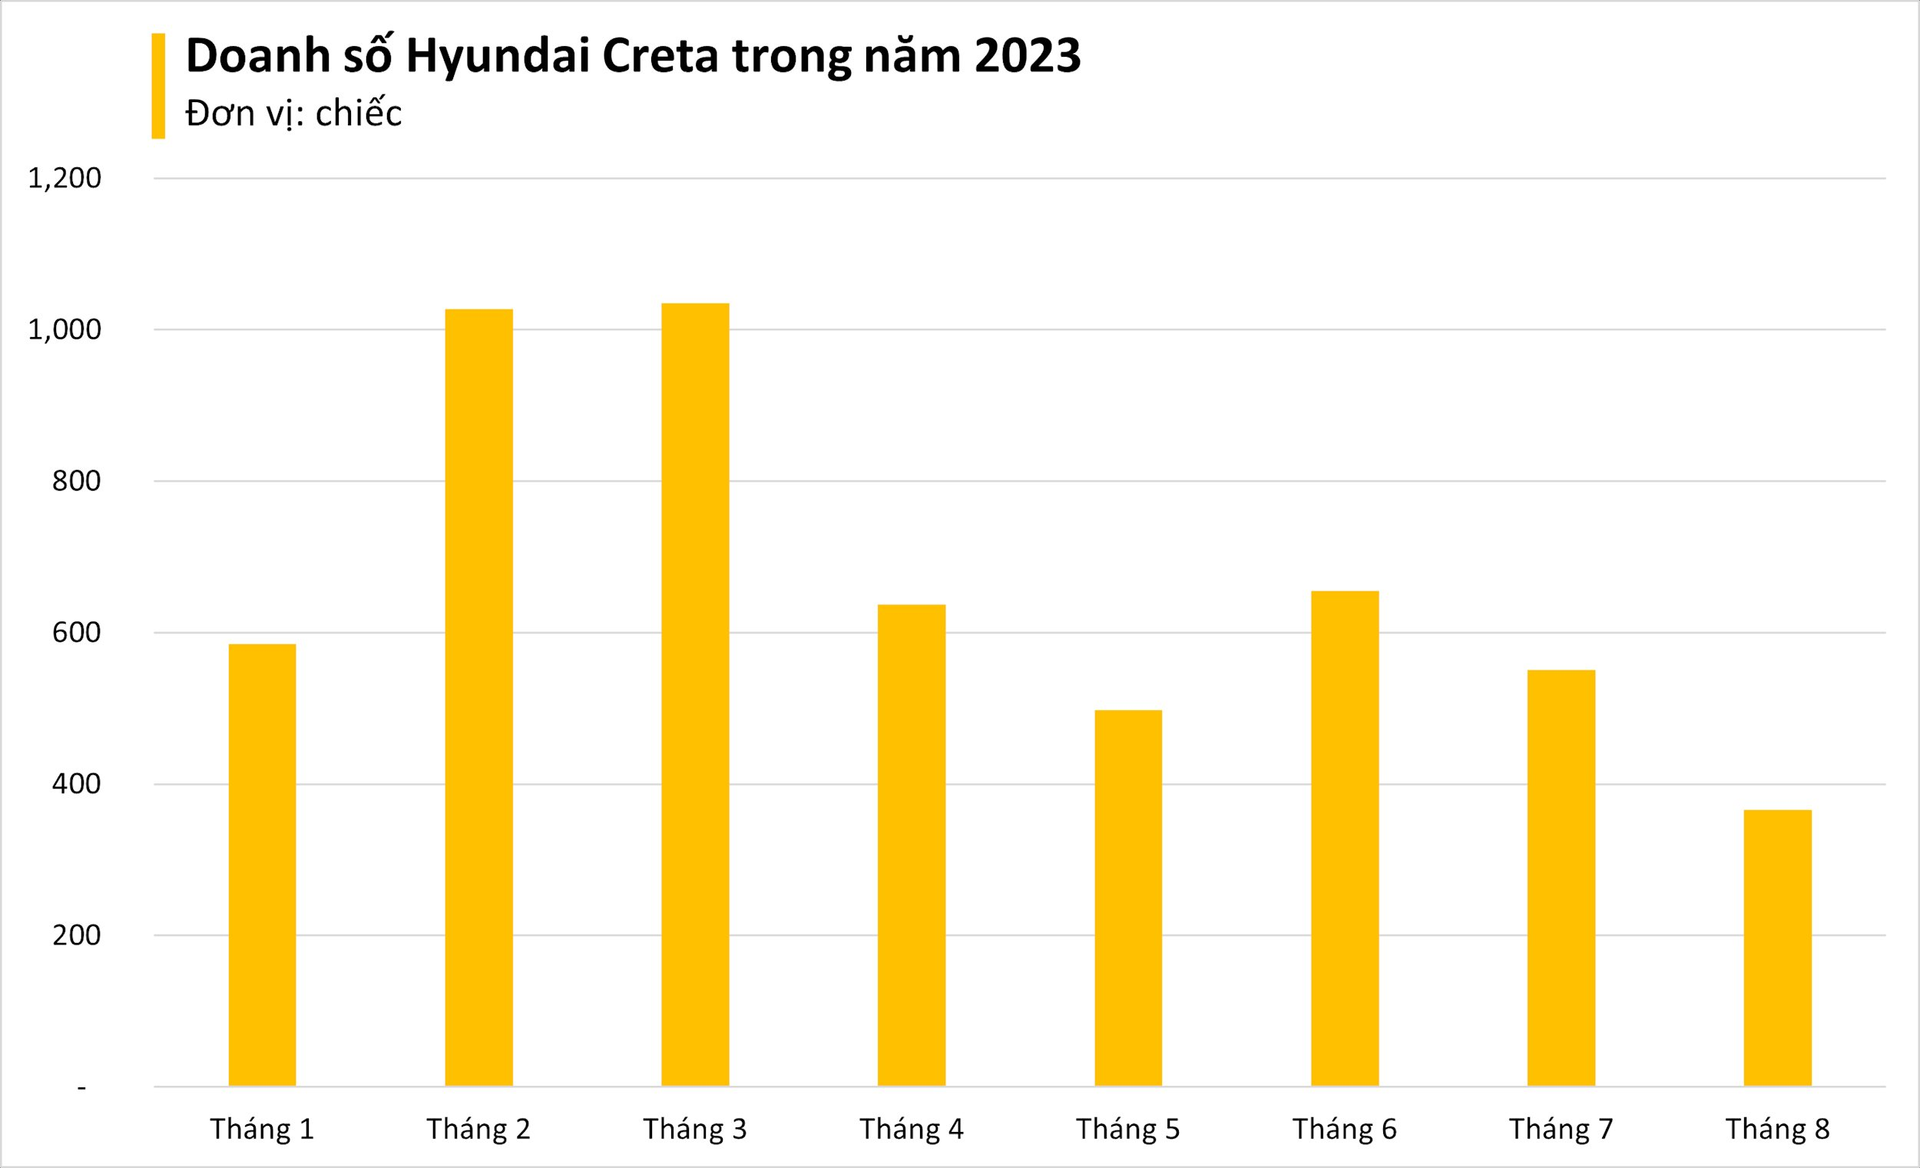 Hyundai Creta mạnh tay ưu đãi tới 80 triệu đồng, tân binh Toyota Yaris Cross vừa ra mắt đã gặp khó - Ảnh 1.